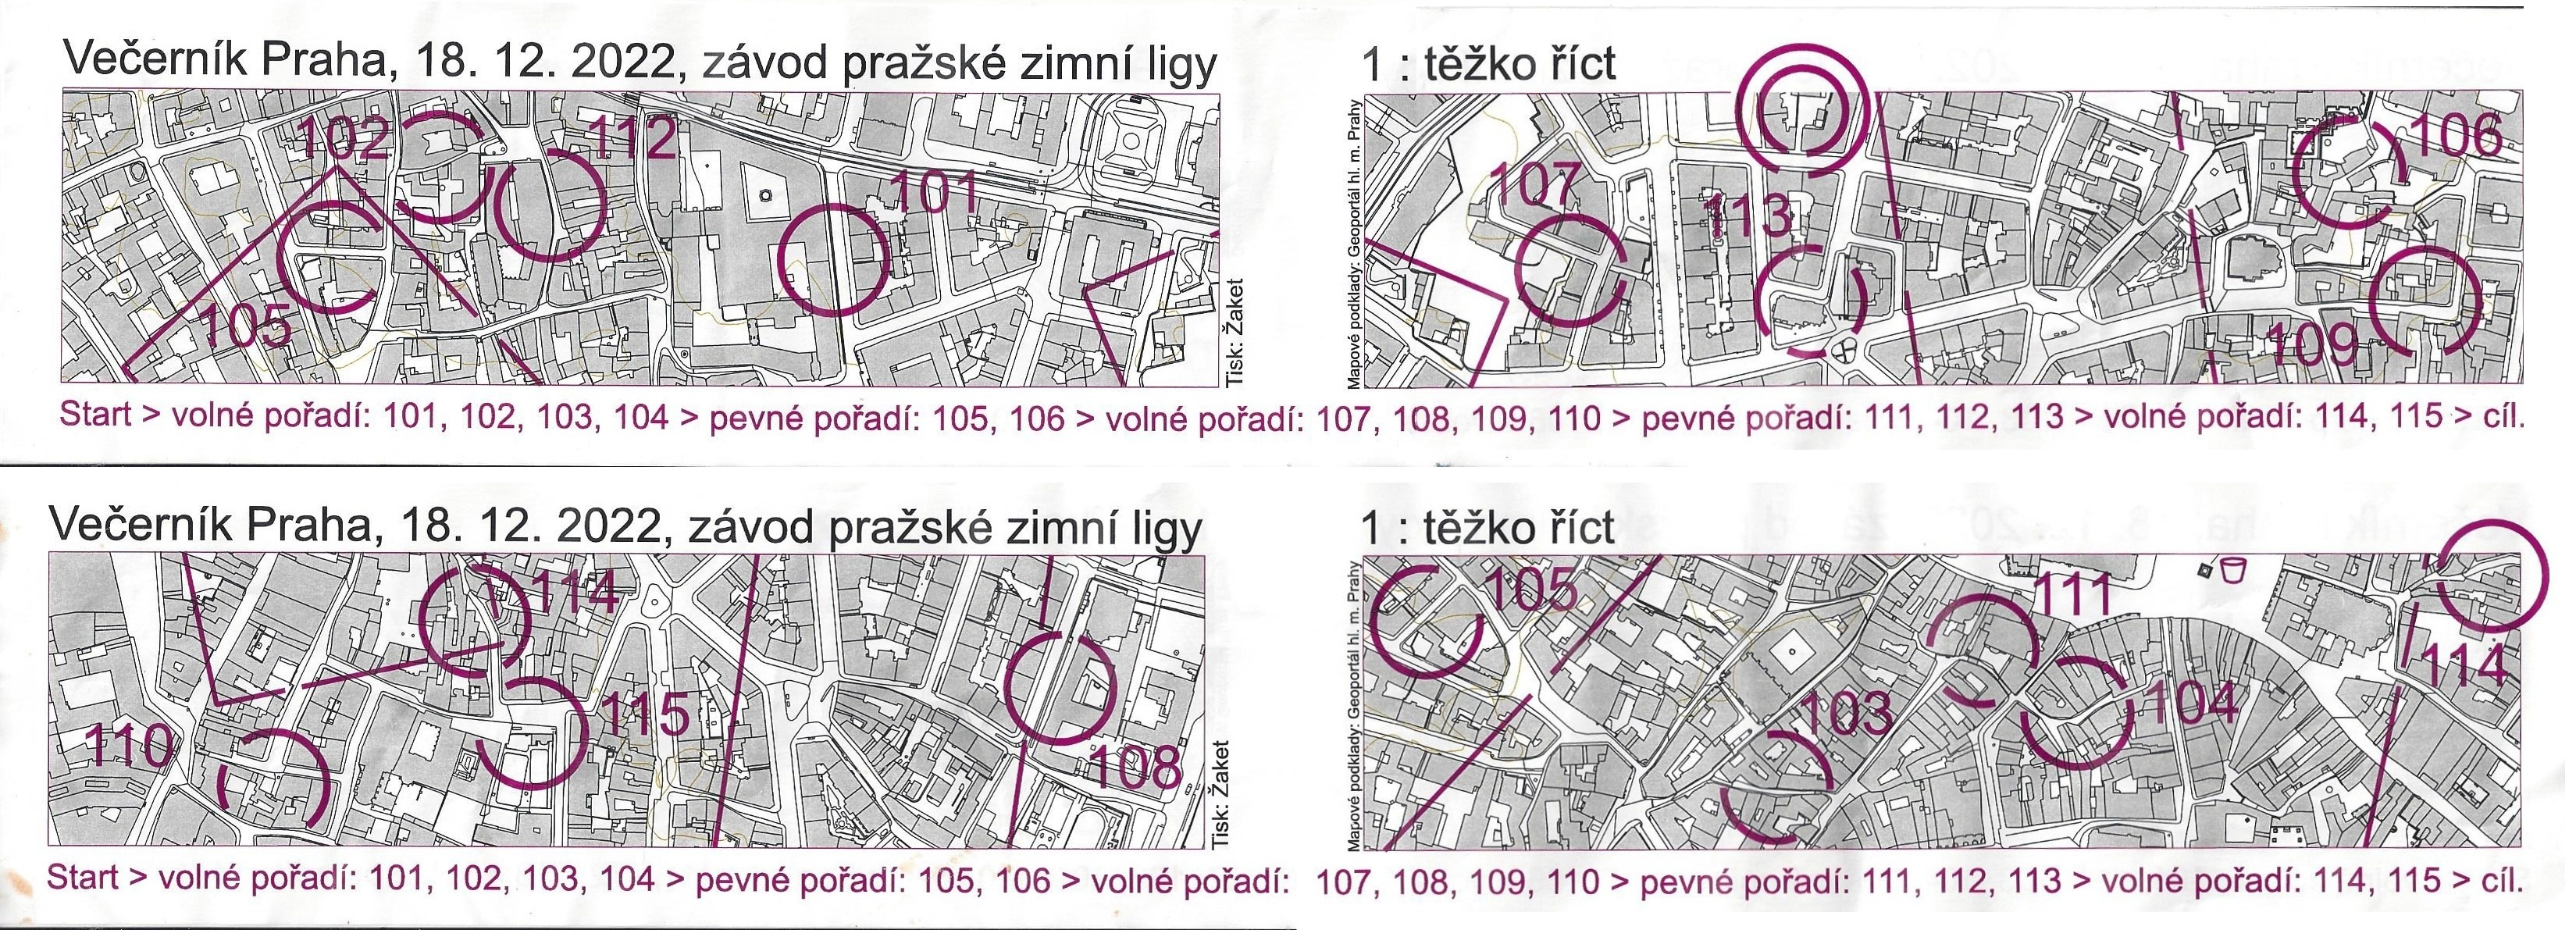 Večeník Praha 2022 - Staré město (18-12-2022)